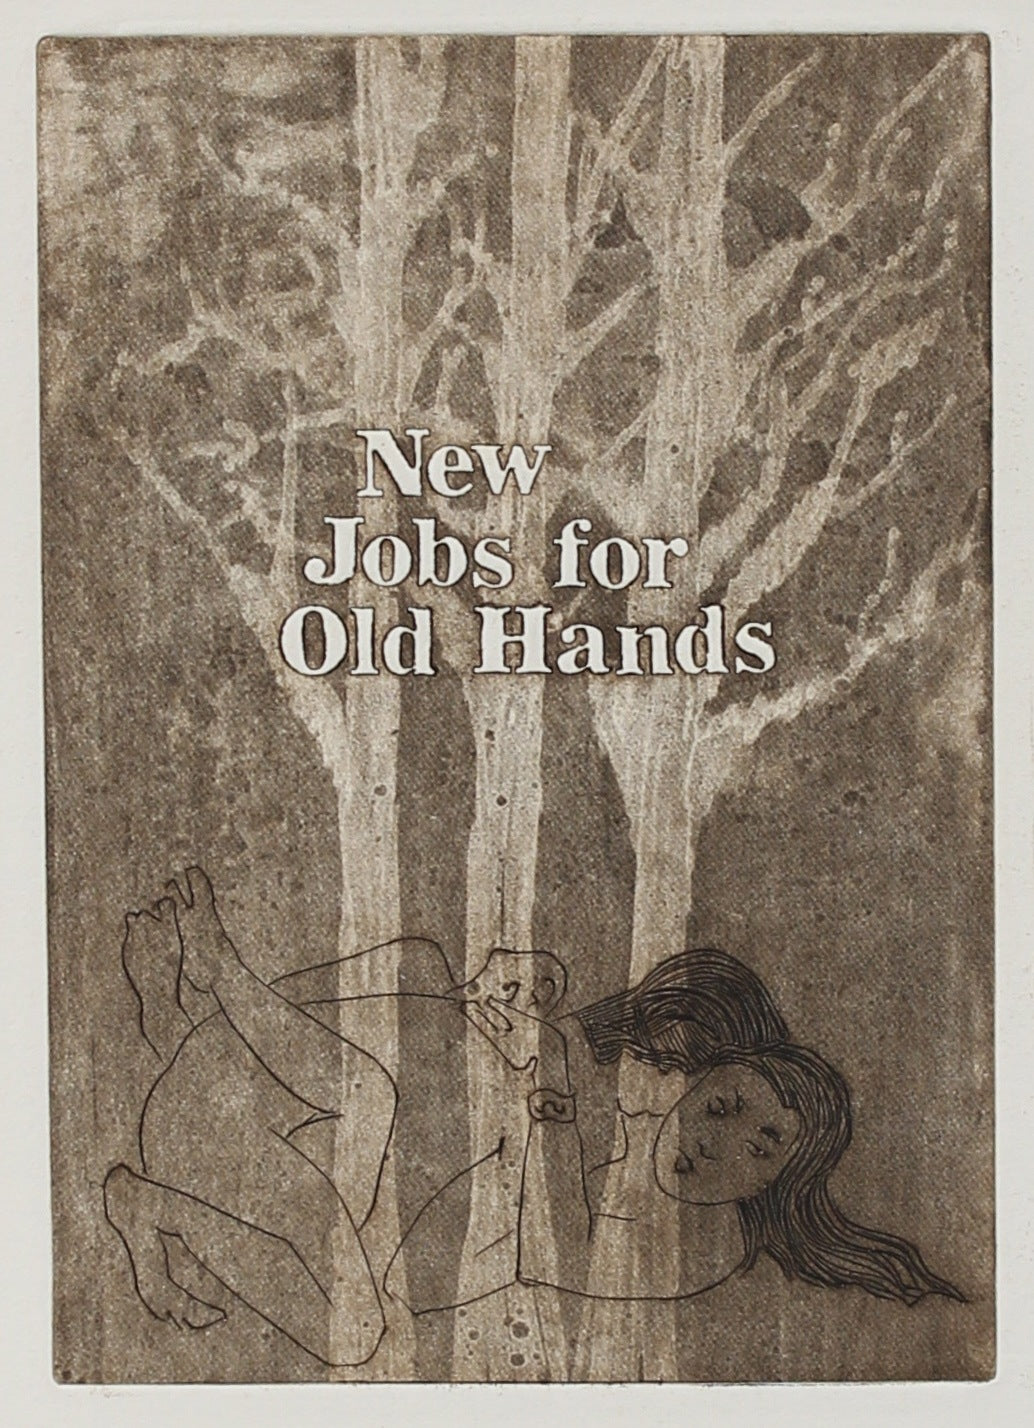 &lt;i&gt;New Jobs for Old Hands&lt;/i&gt;&lt;br&gt;1977 Etching&lt;br&gt;&lt;br&gt;#2241